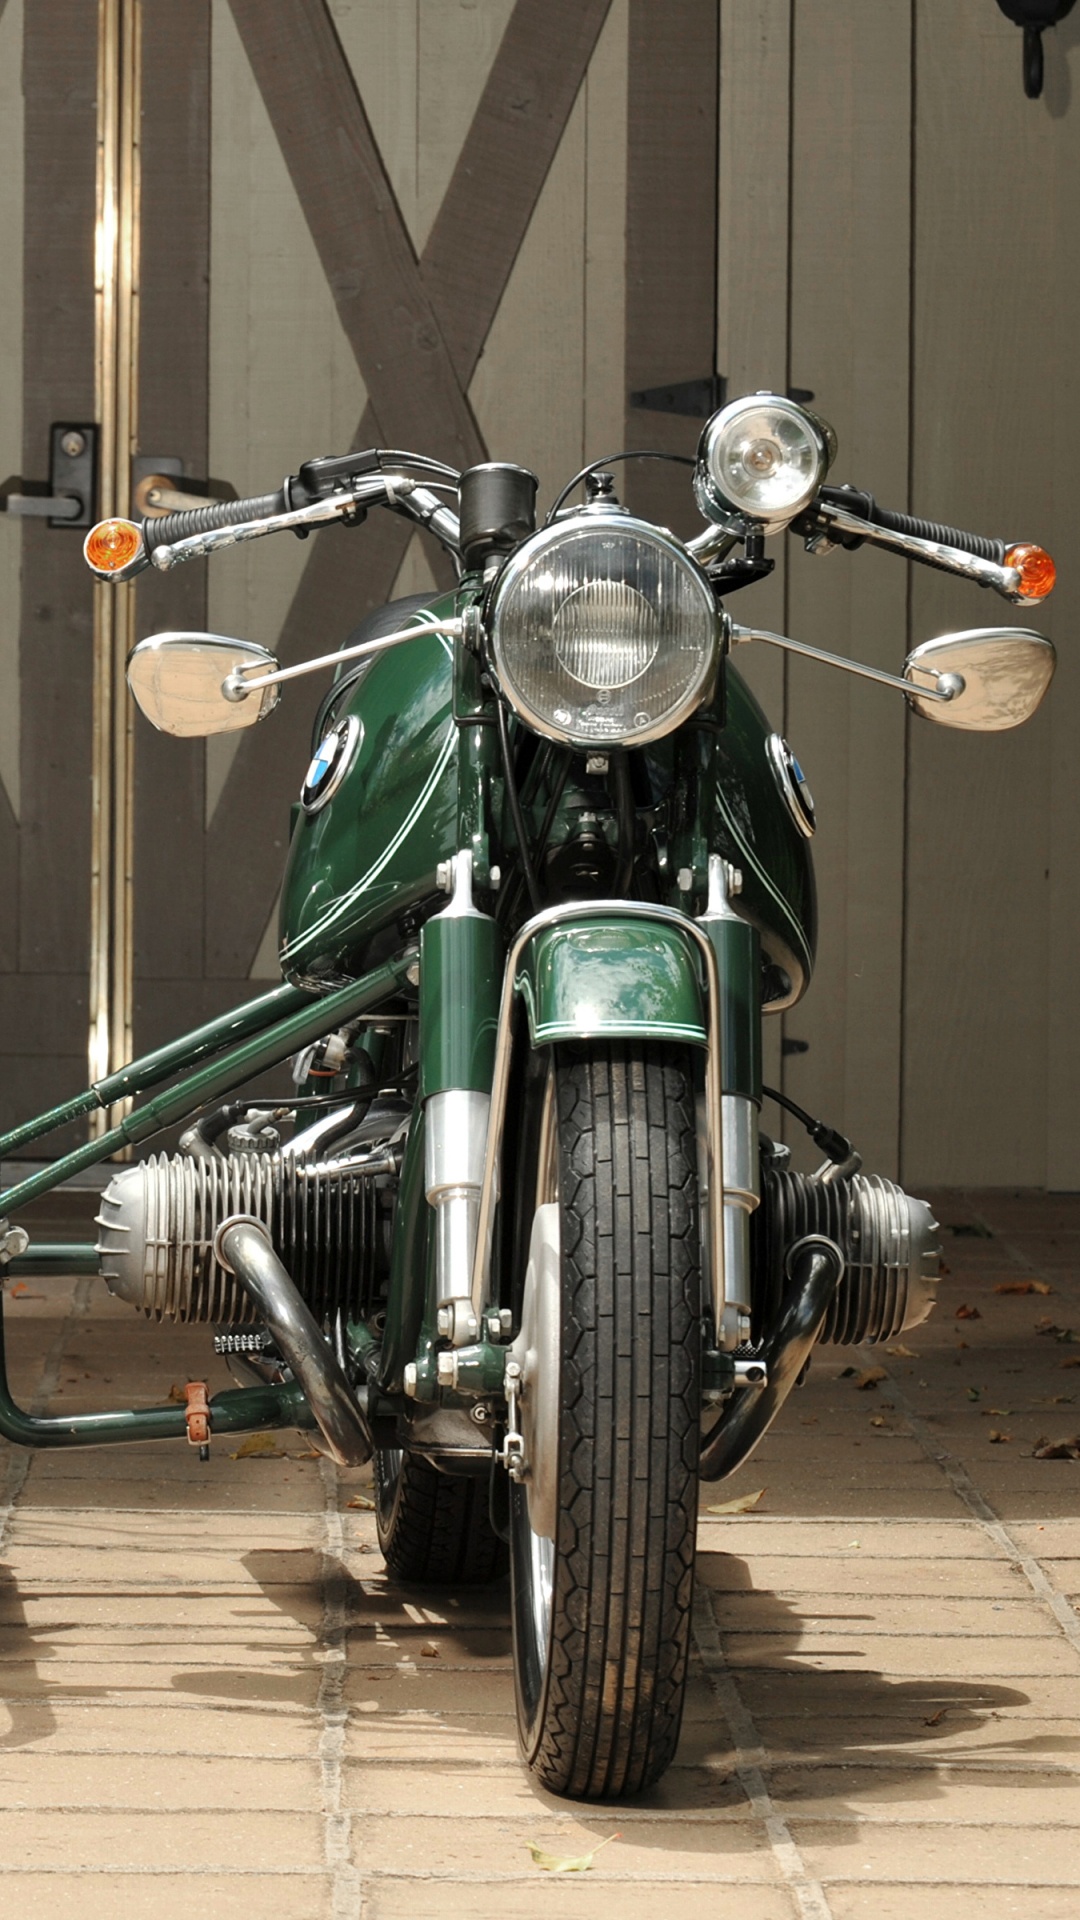 Motocicleta Verde y Negra en Una Habitación. Wallpaper in 1080x1920 Resolution